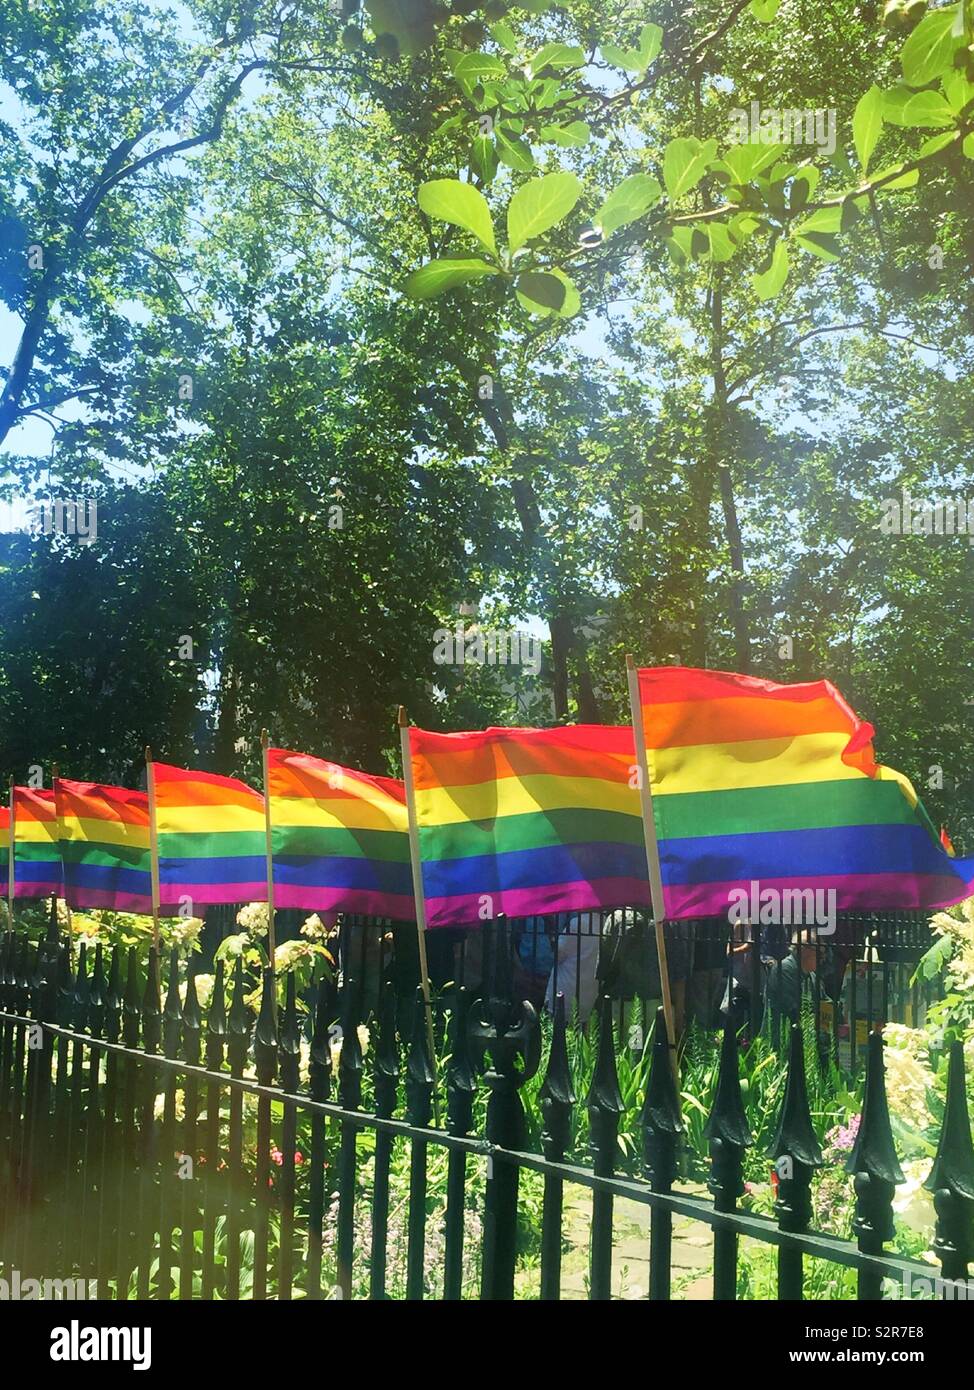 WorldPride banderas del arco iris en el monumento nacional de Stonewall, Greenwich Village, Nueva York, EE.UU. Foto de stock